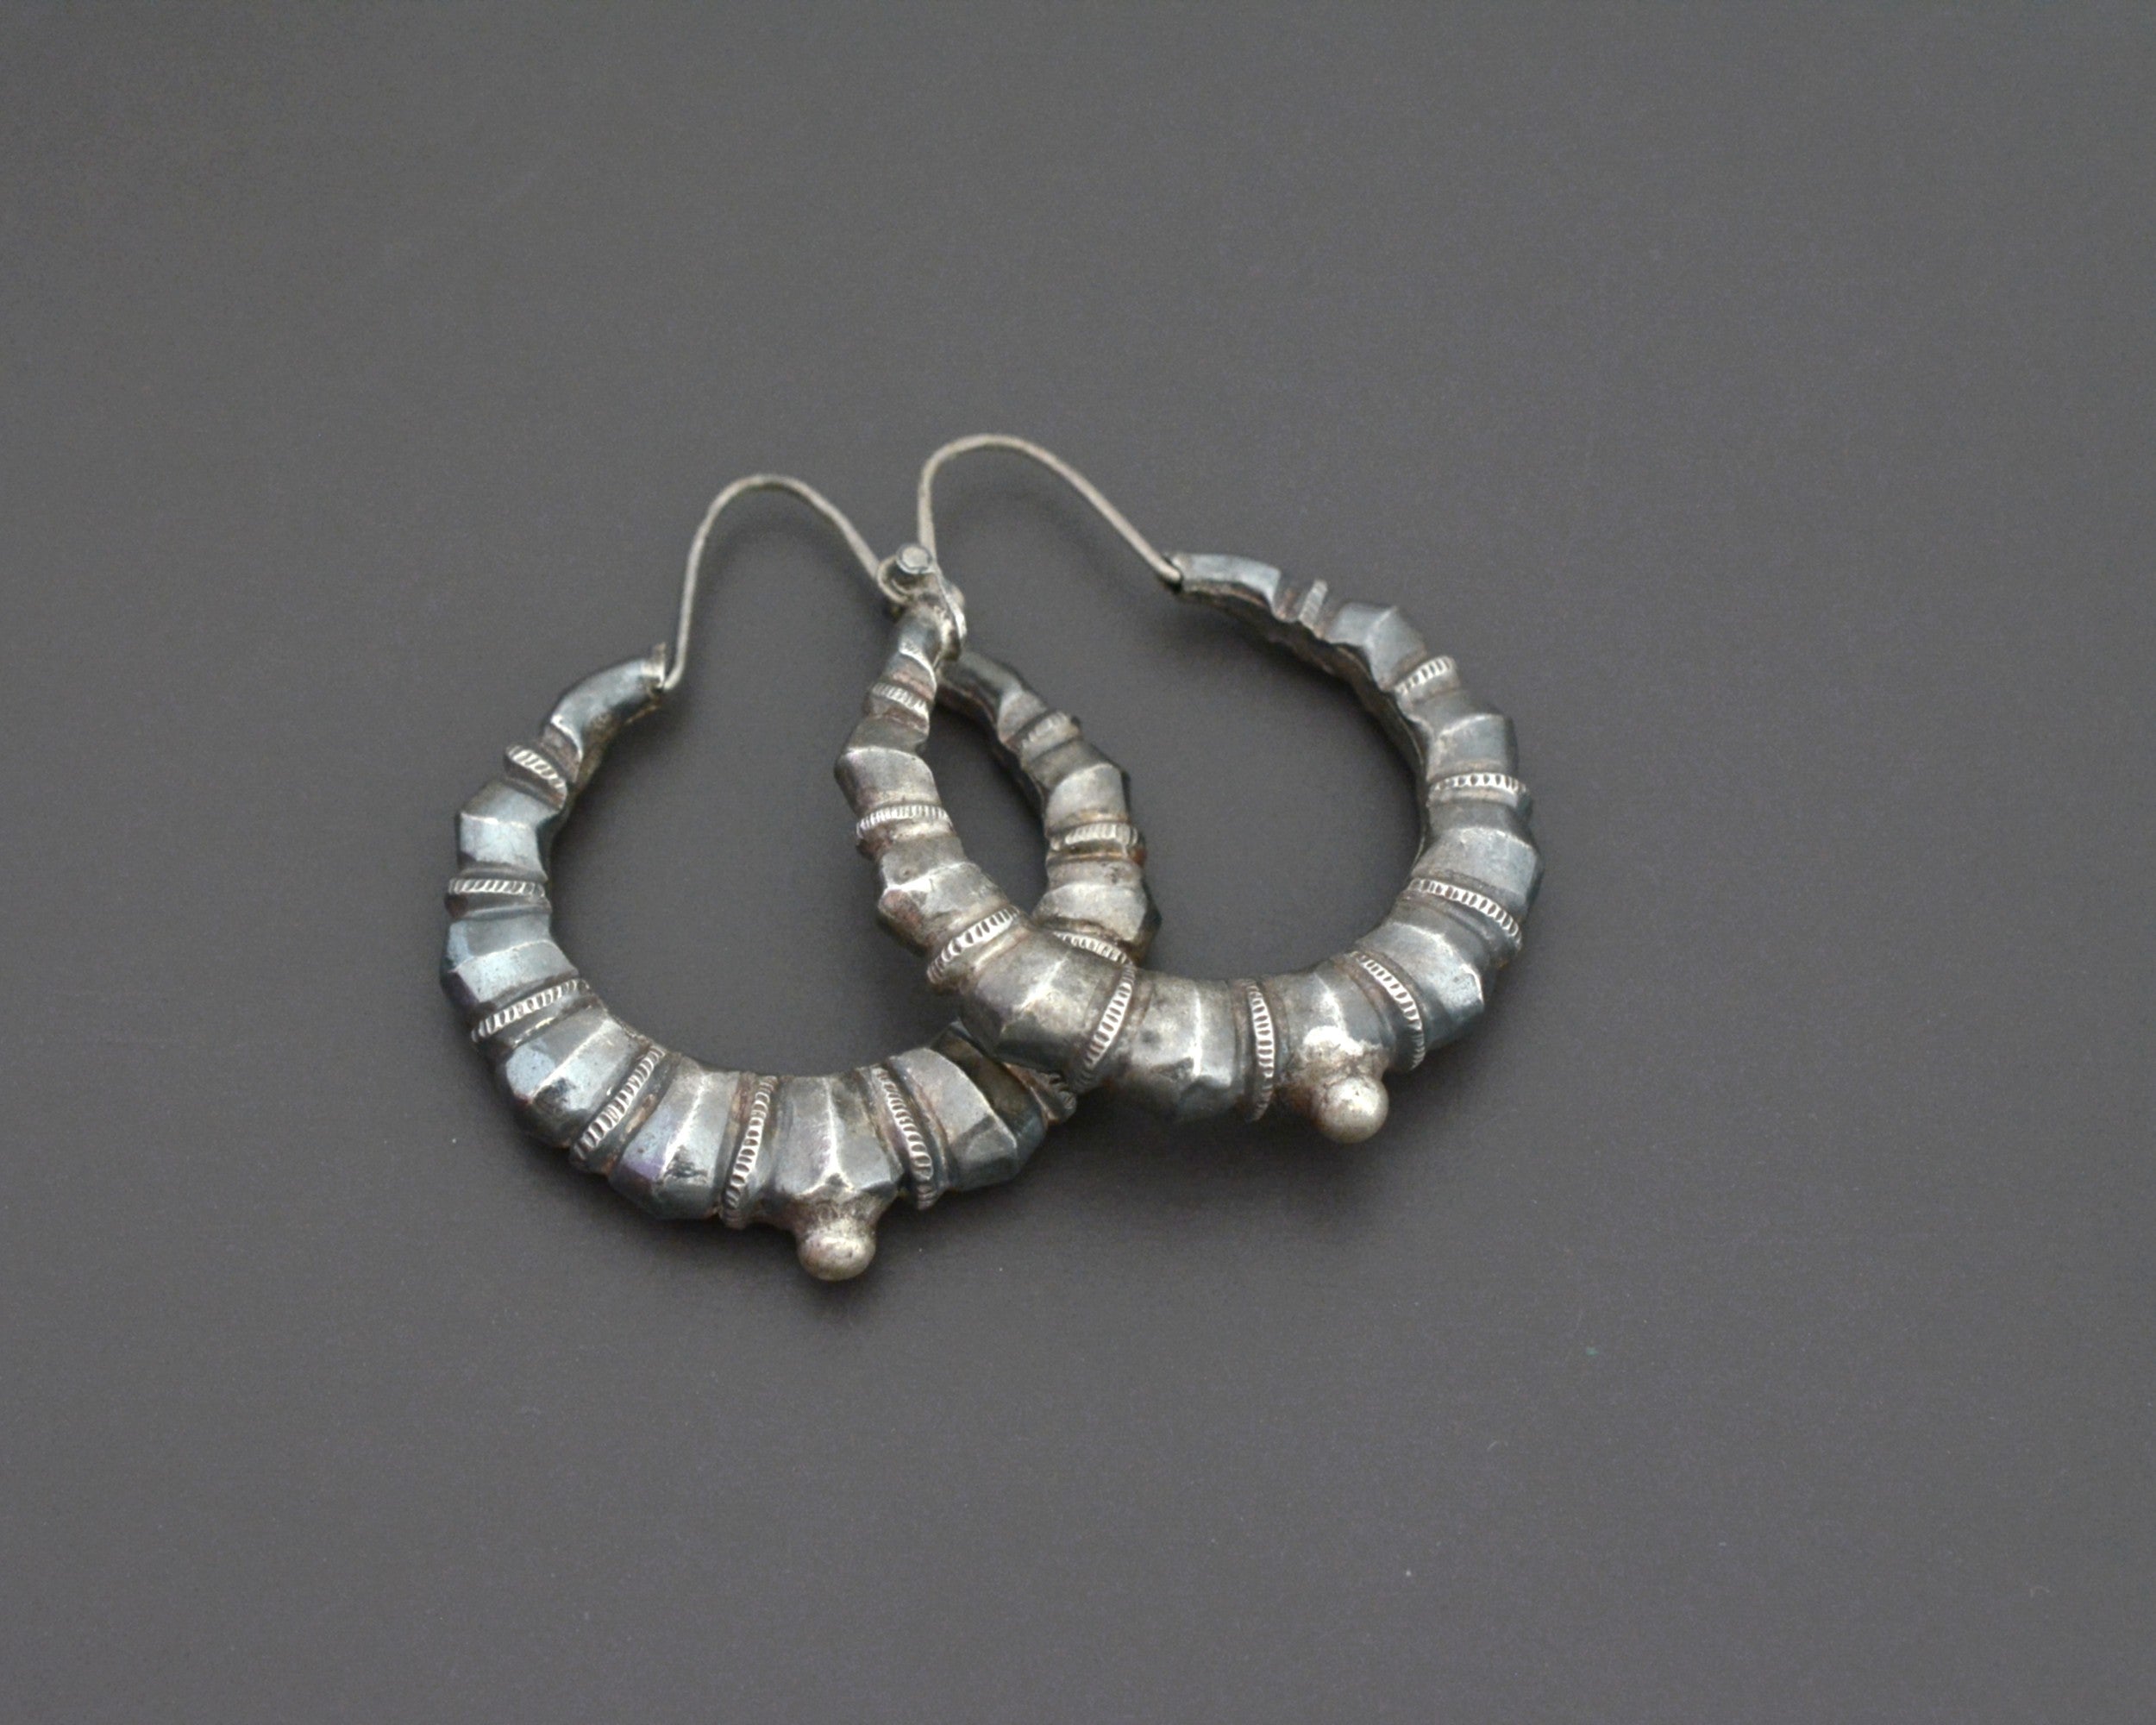 Nepali Silver Hoop Earrings - Medium Large